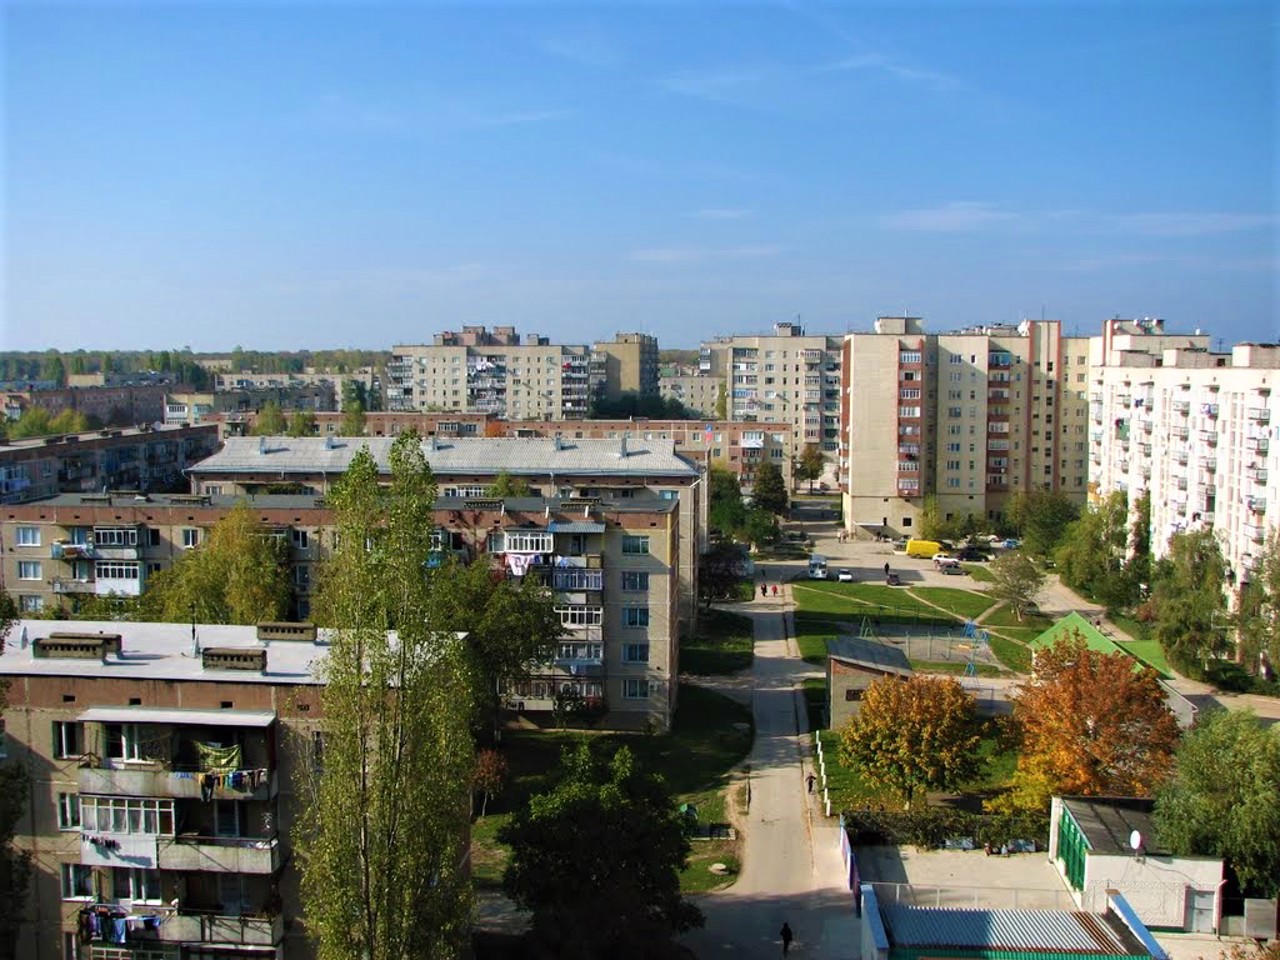 City of Novodnistrovsk